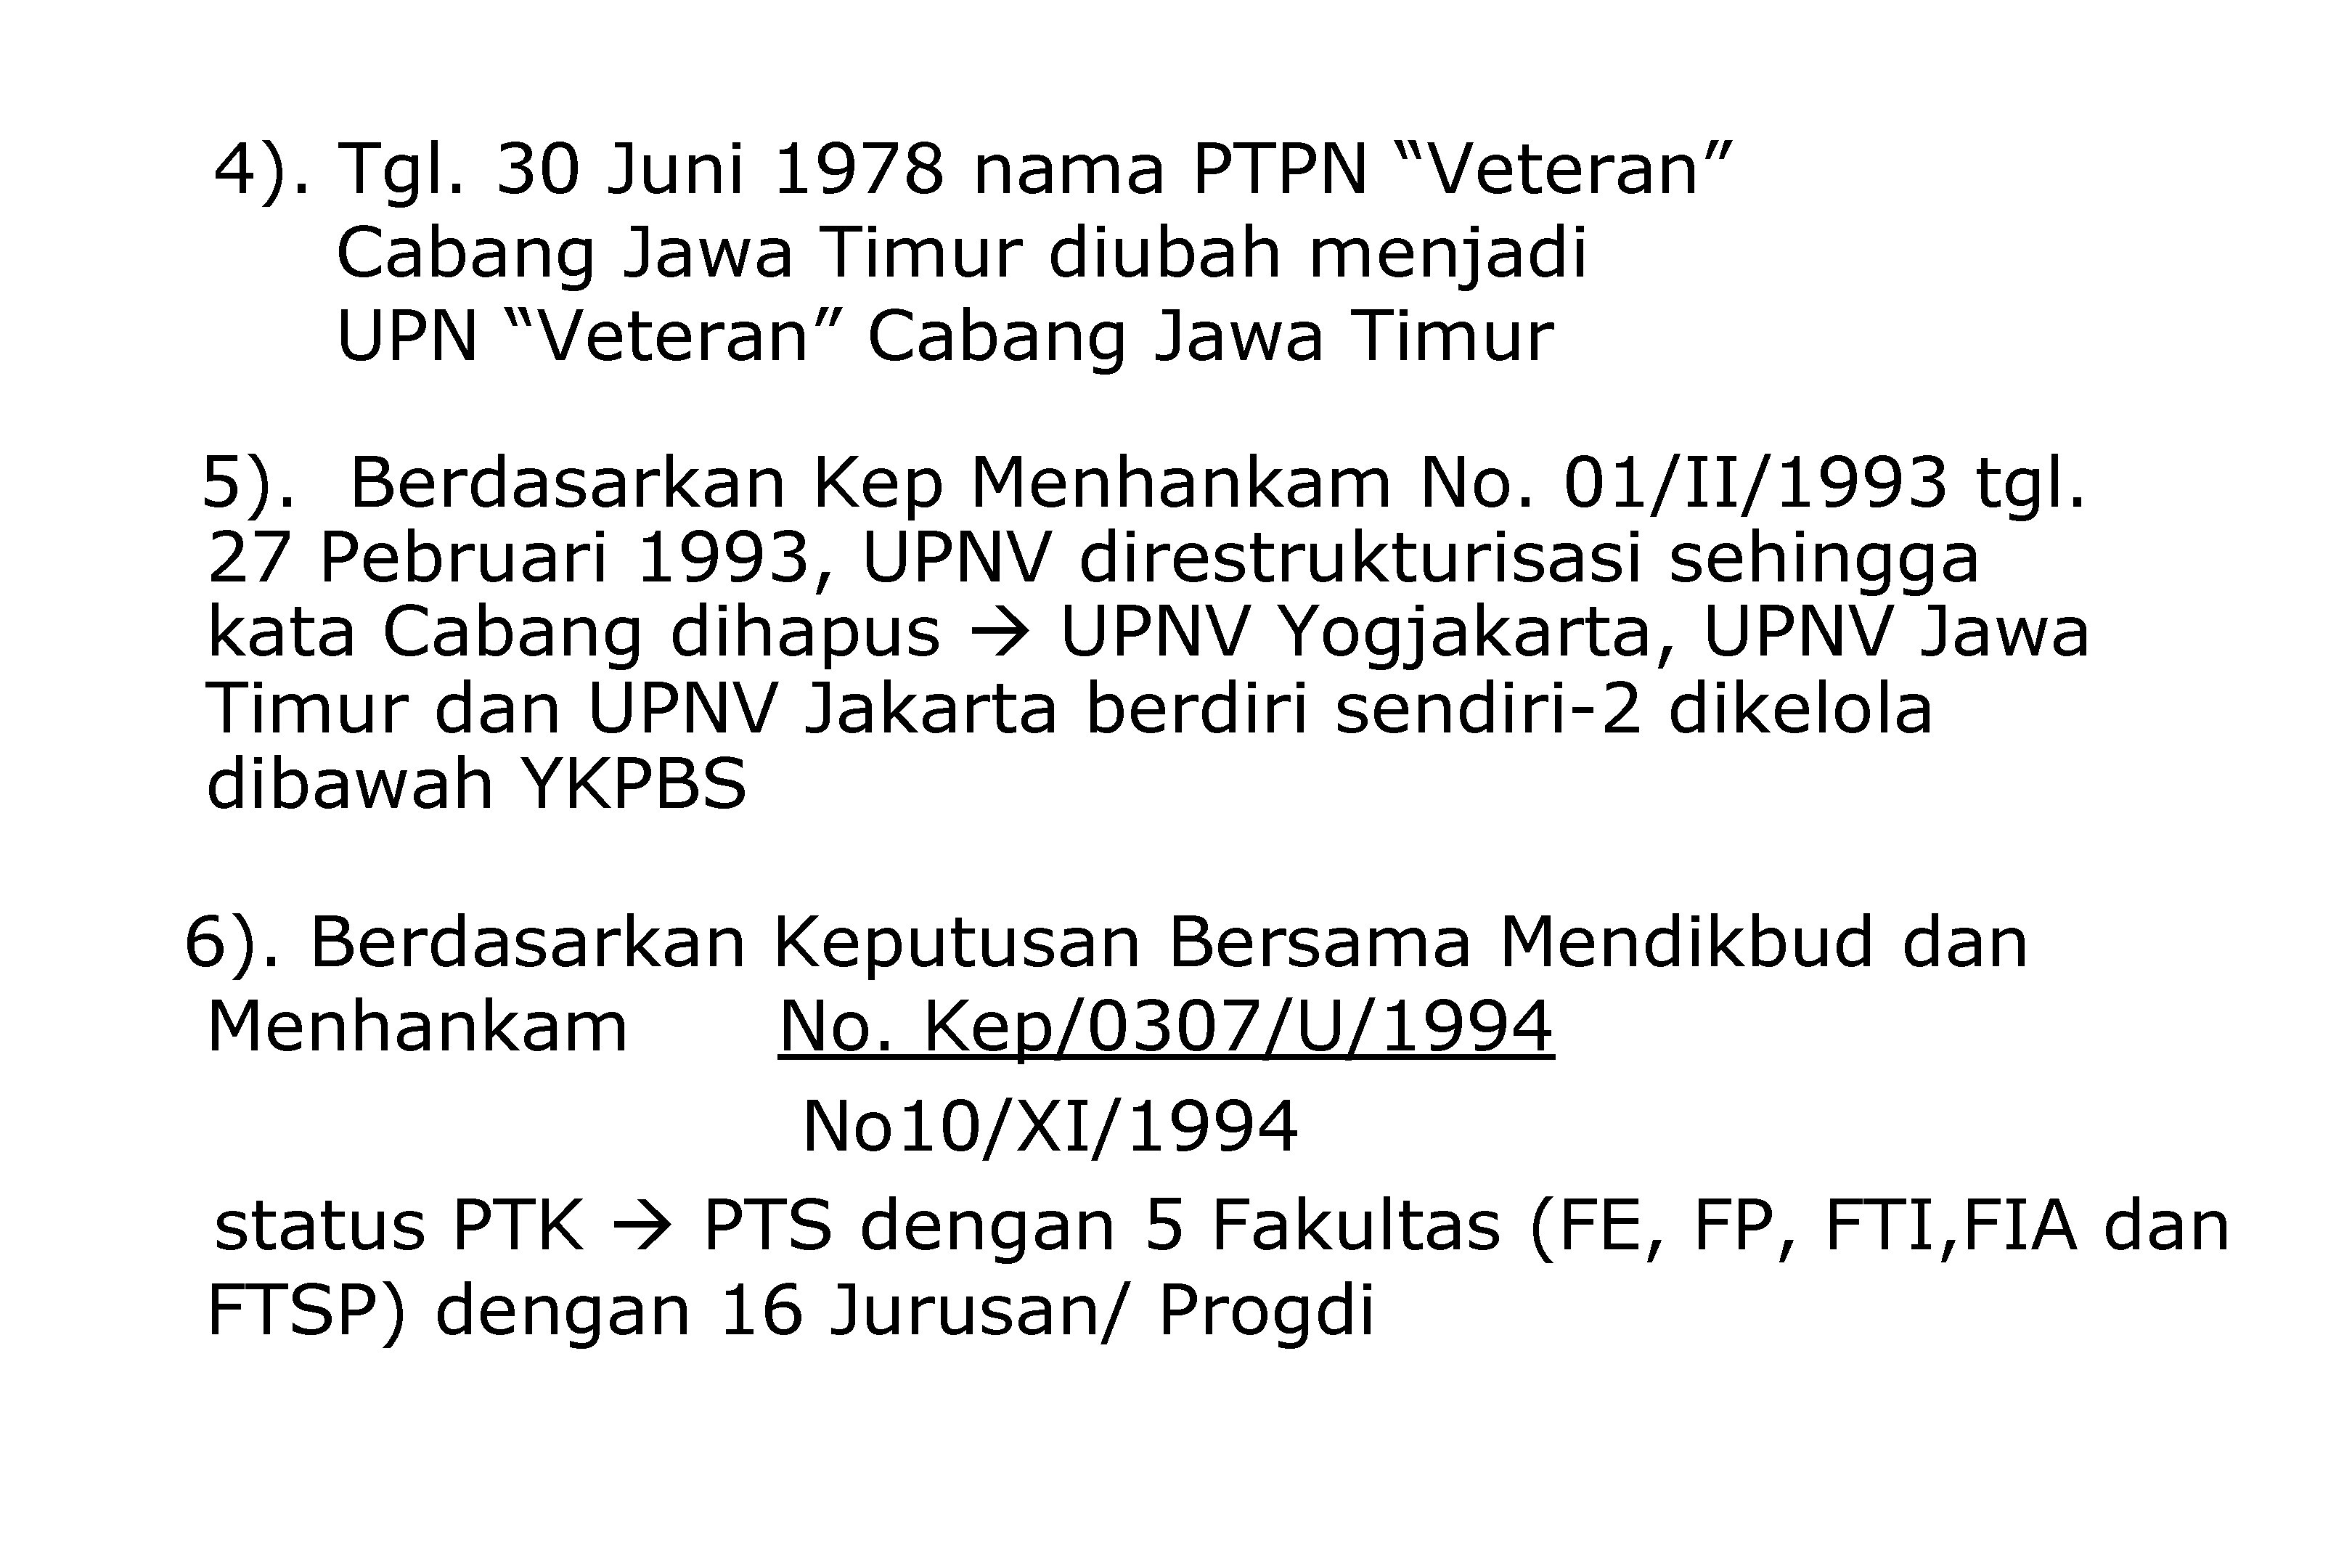 4). Tgl. 30 Juni 1978 nama PTPN “Veteran” Cabang Jawa Timur diubah menjadi UPN